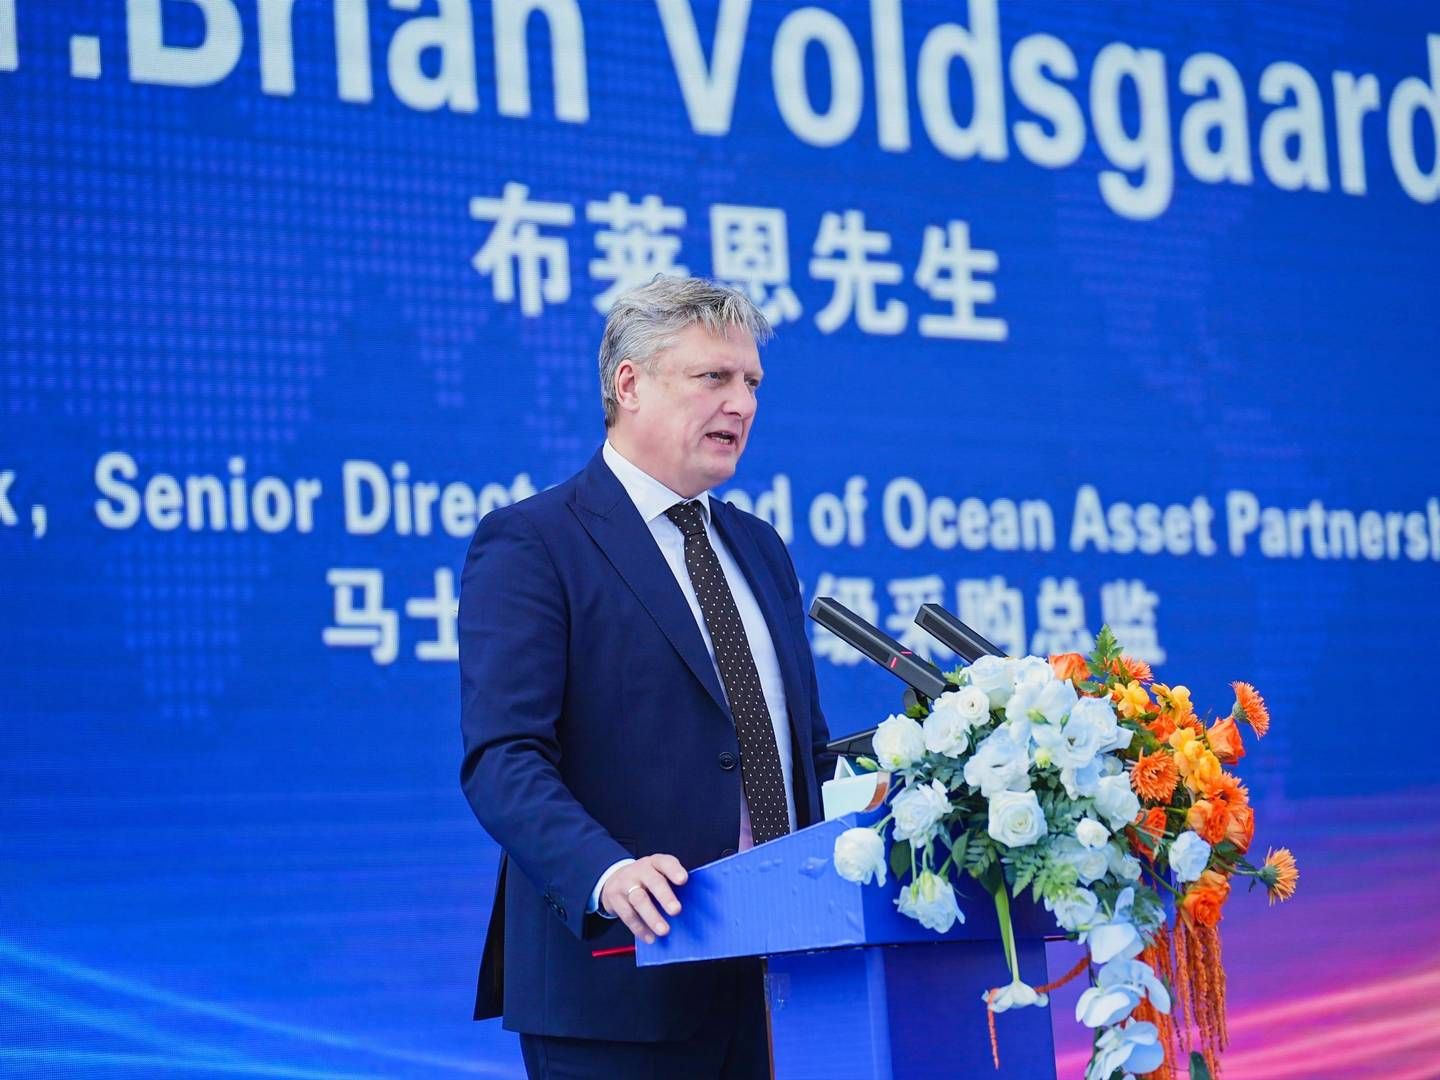 Brian Voldsgaard, der er Mærsk Groups indkøbsdirektør, var med til ceremonien i Shanghai, hvor aftalen officielt blev underskrevet. | Foto: Zhoushan Xinya maersk